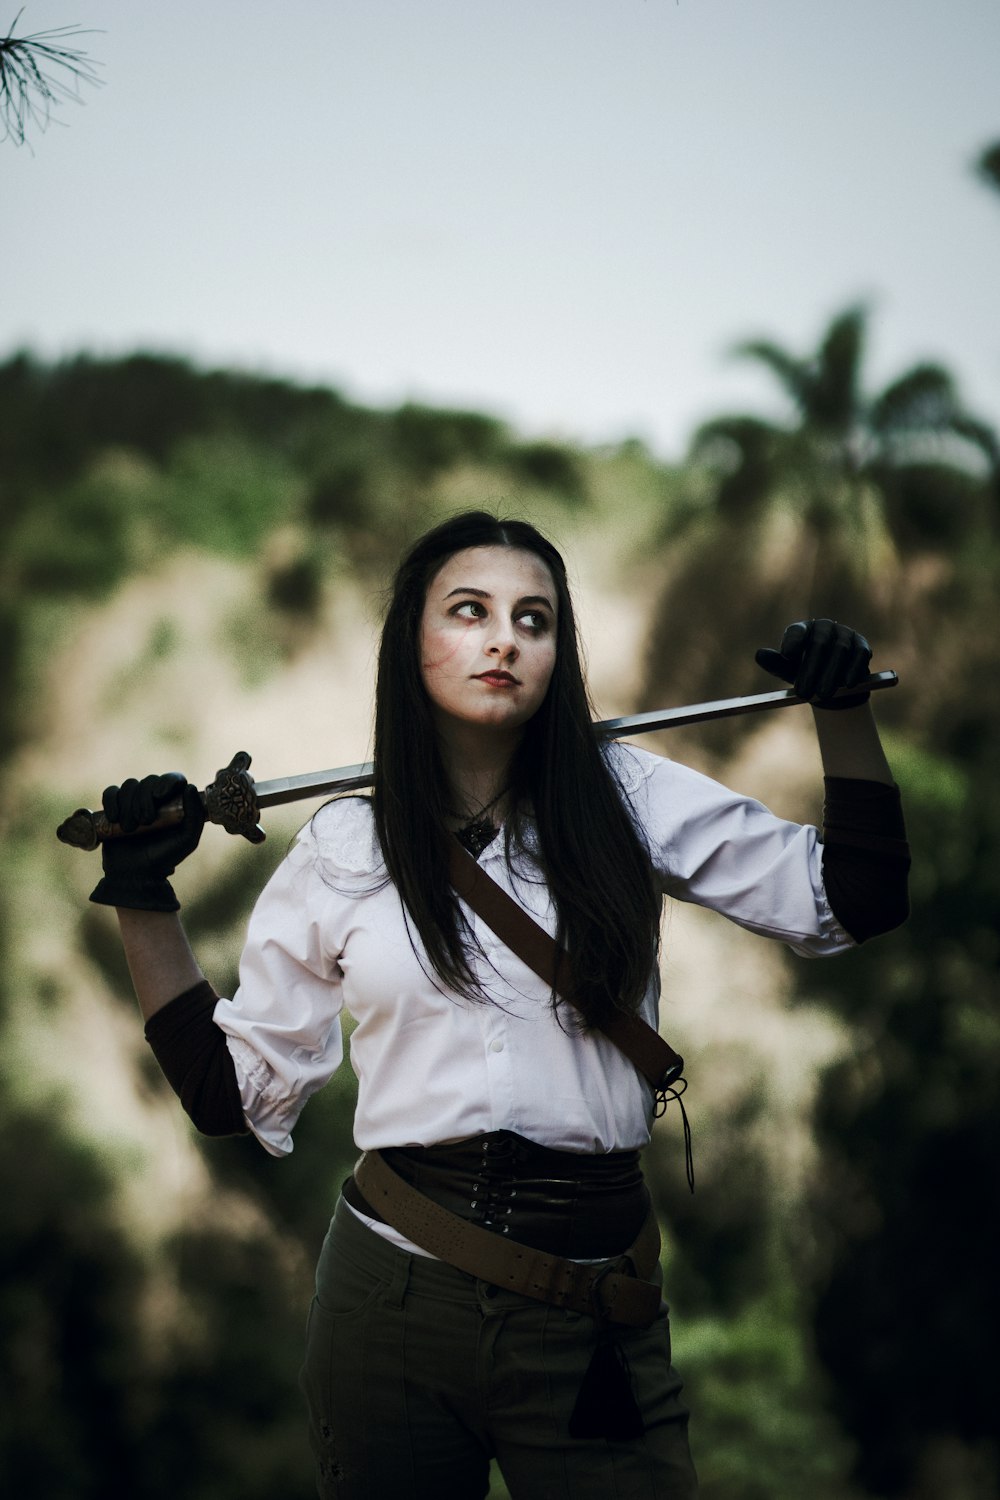 海賊の衣装を着た女性が剣を持っている